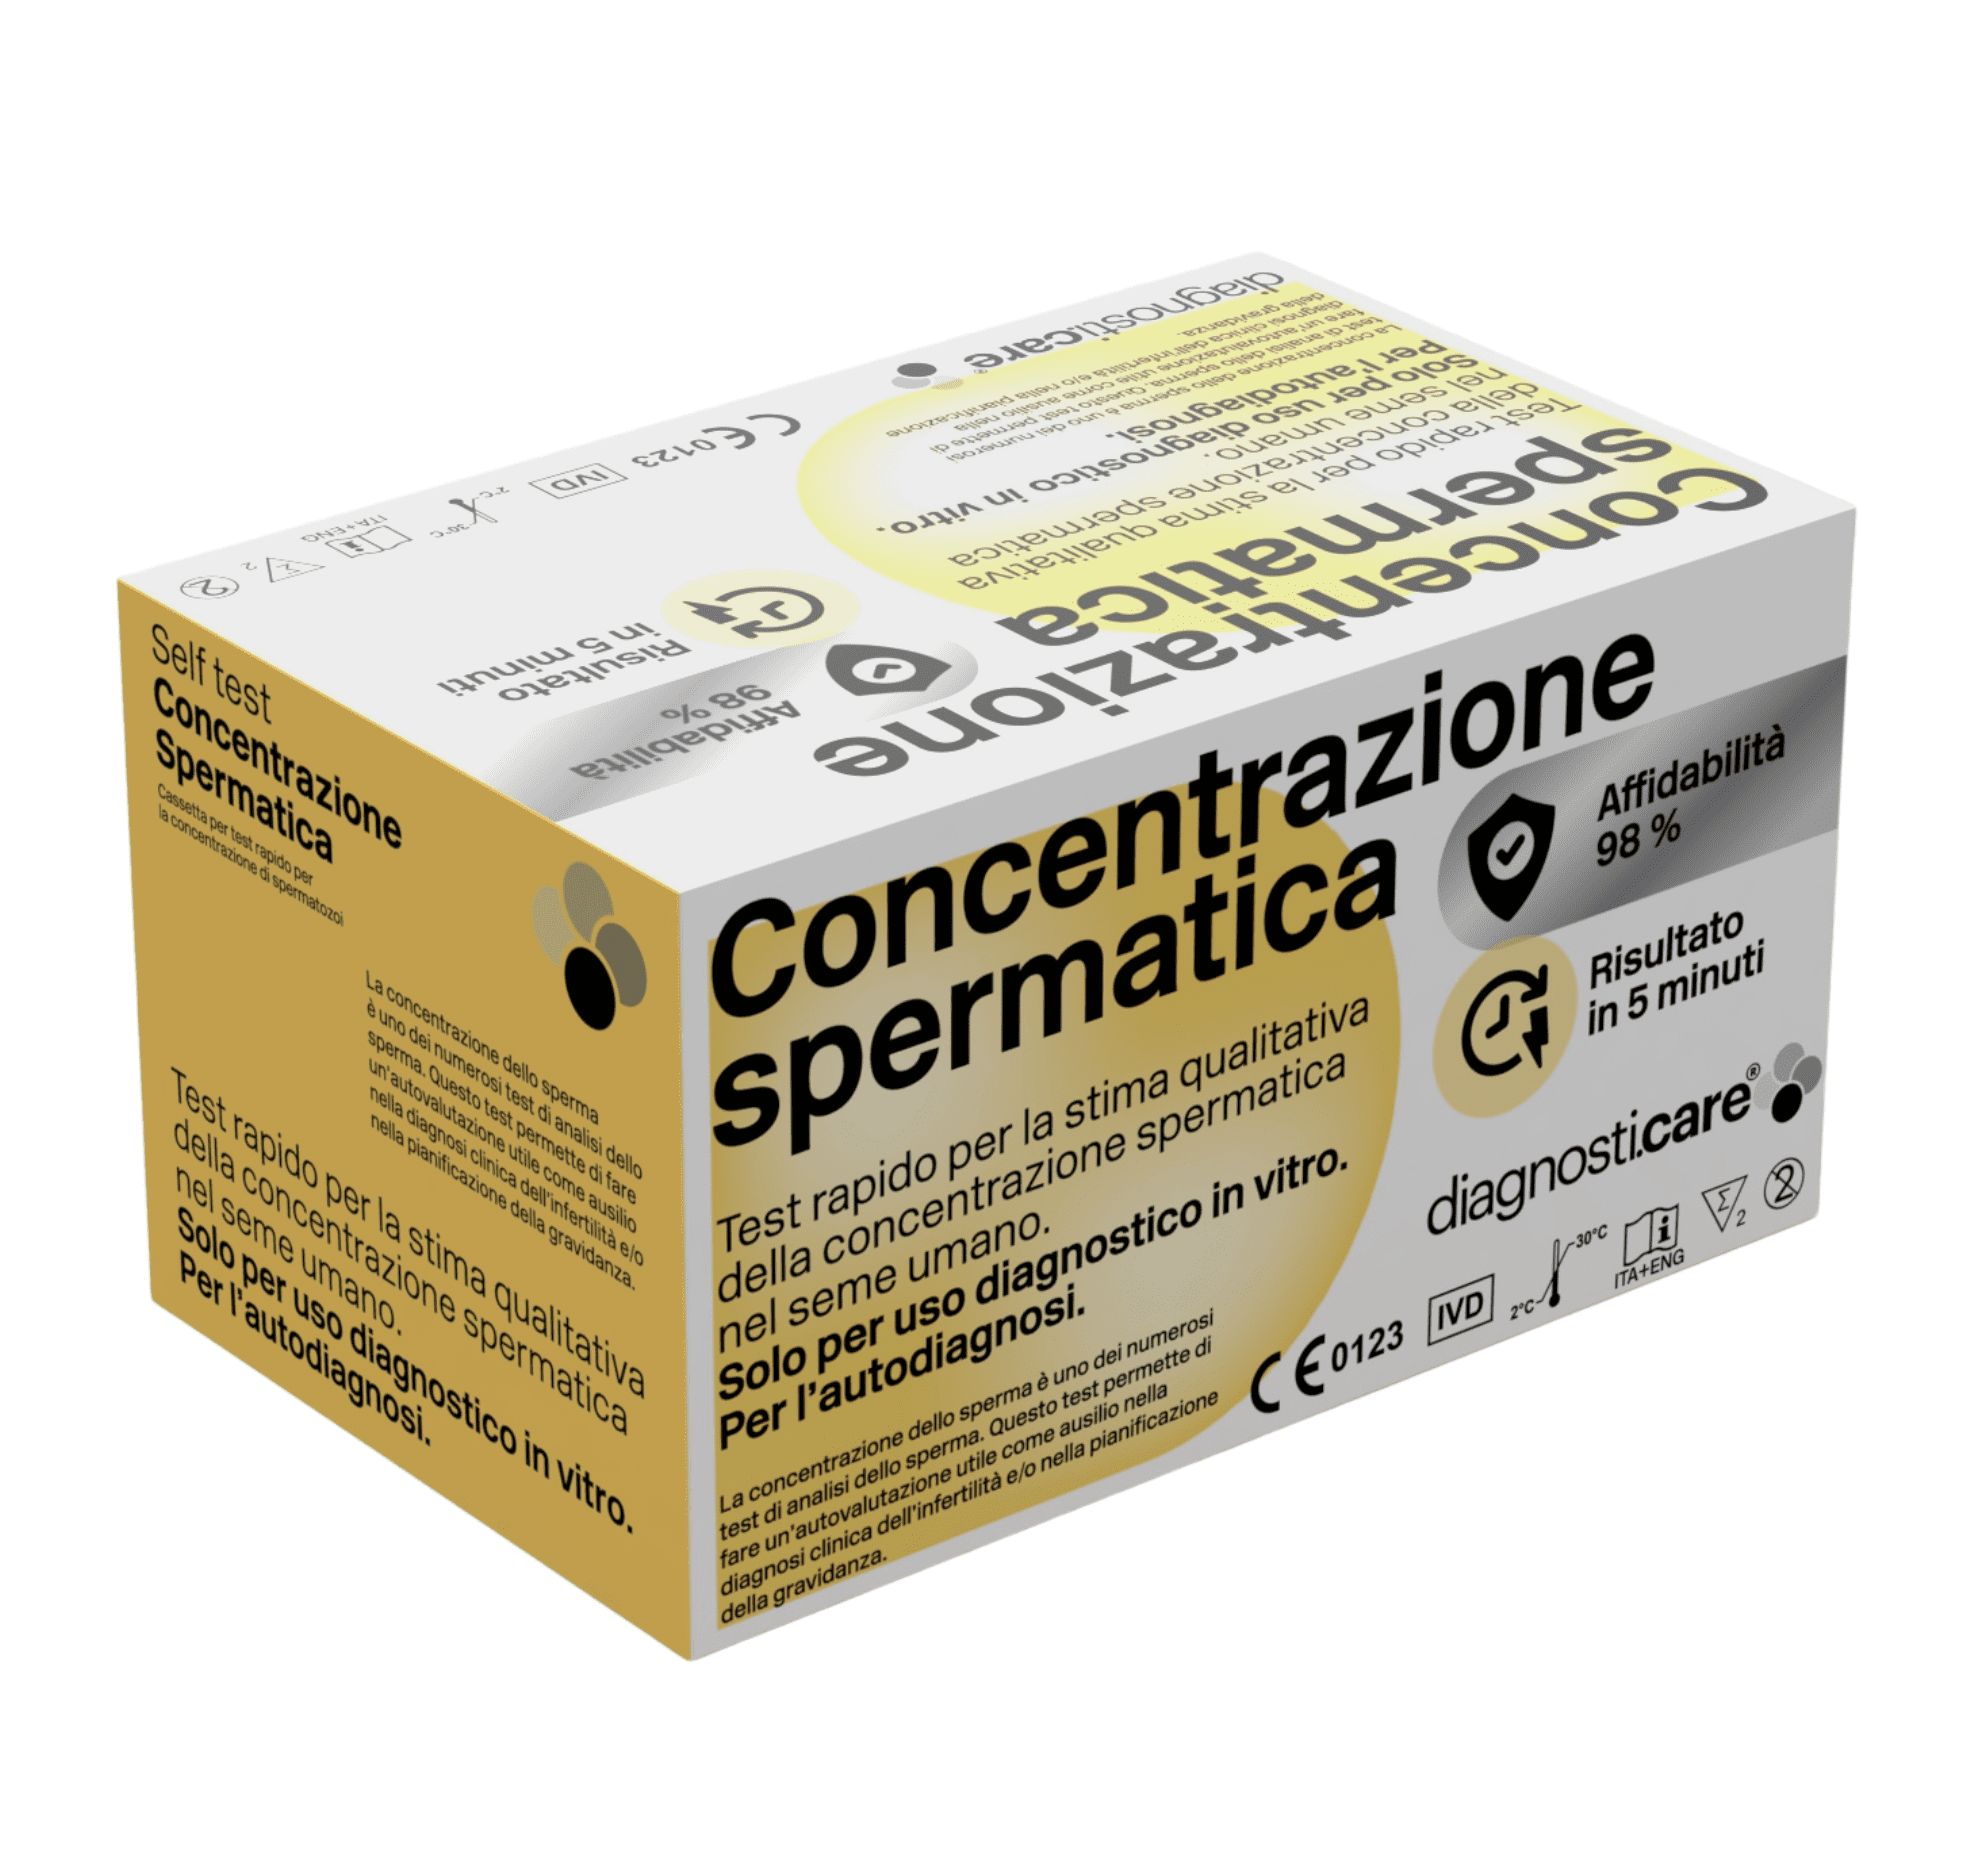 Self Test Concentrazione spermatica